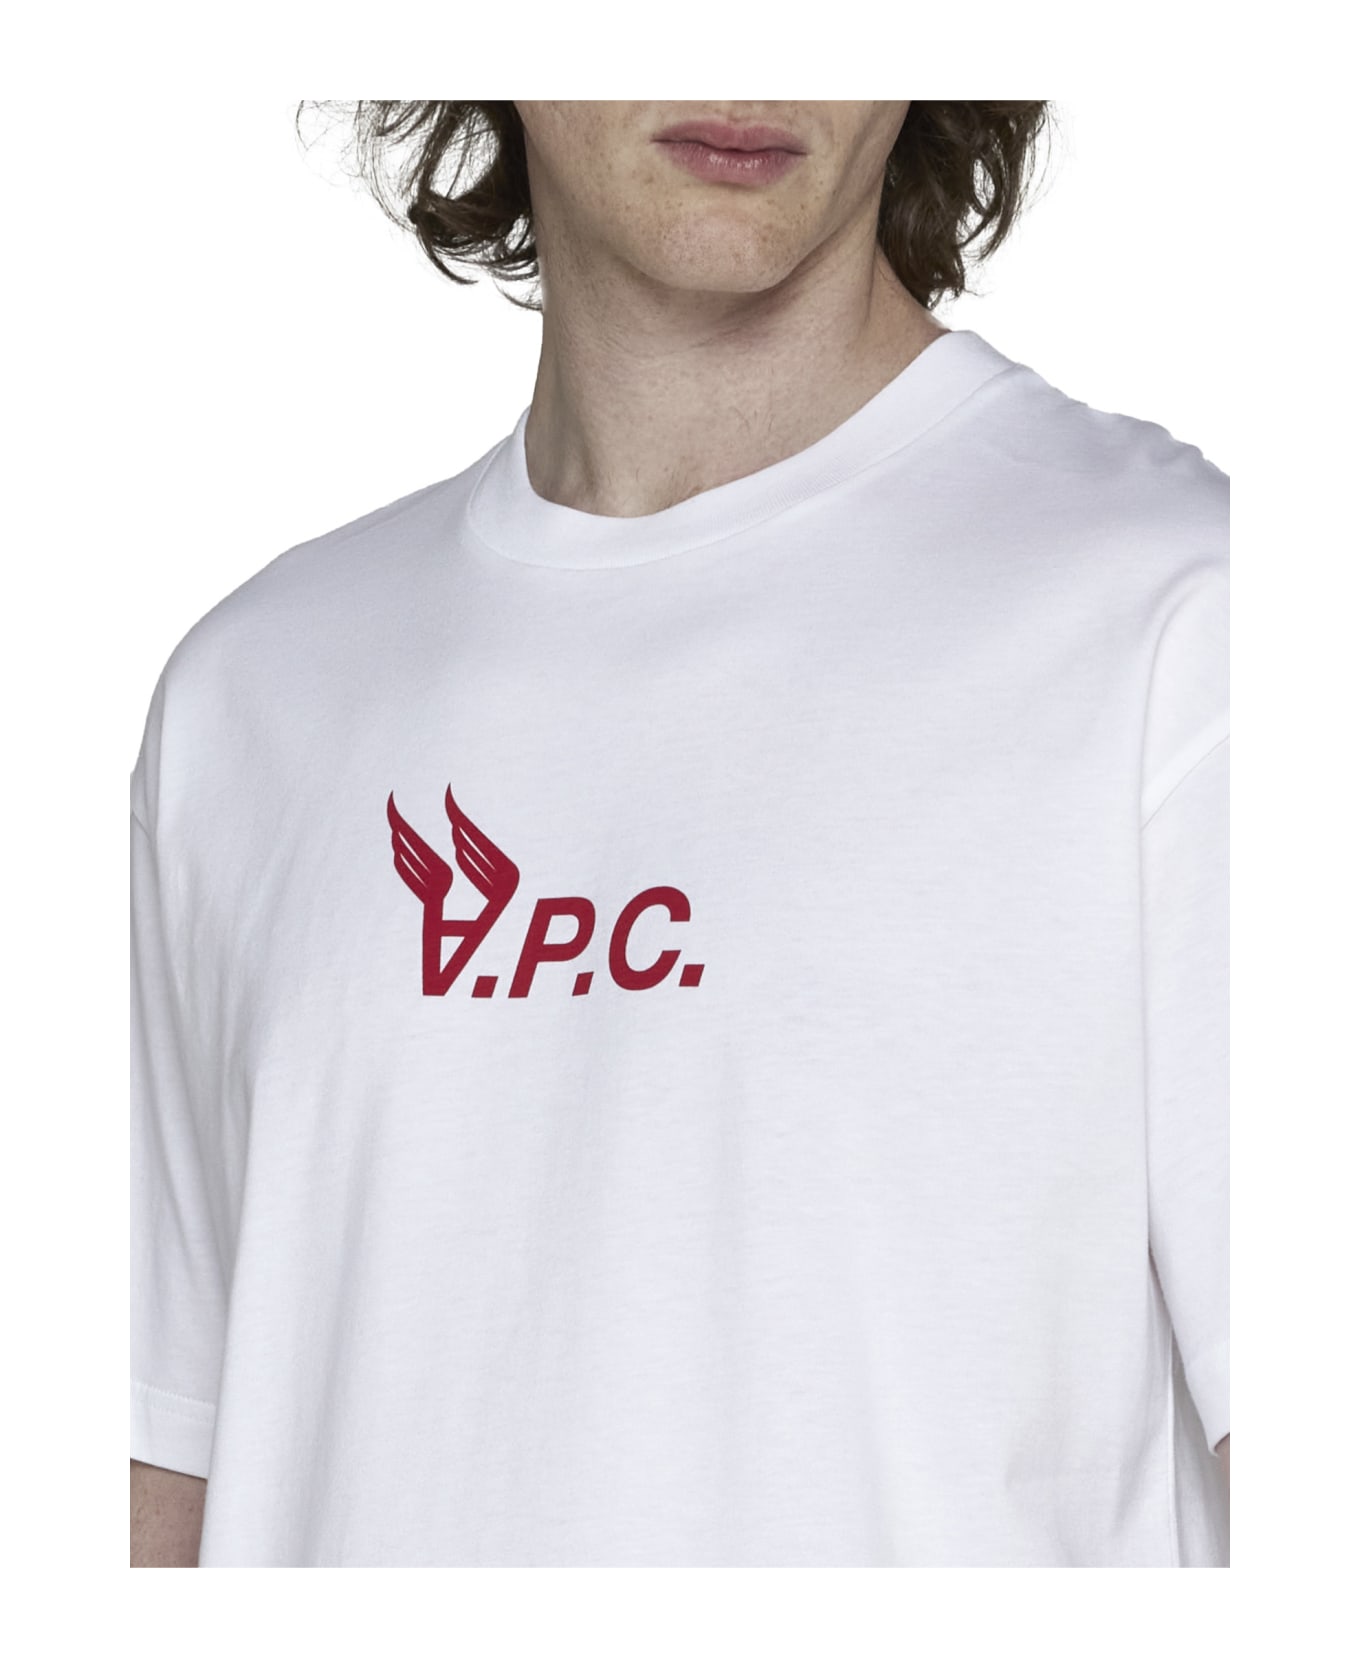 A.P.C. Hermance T-shirt - Cream